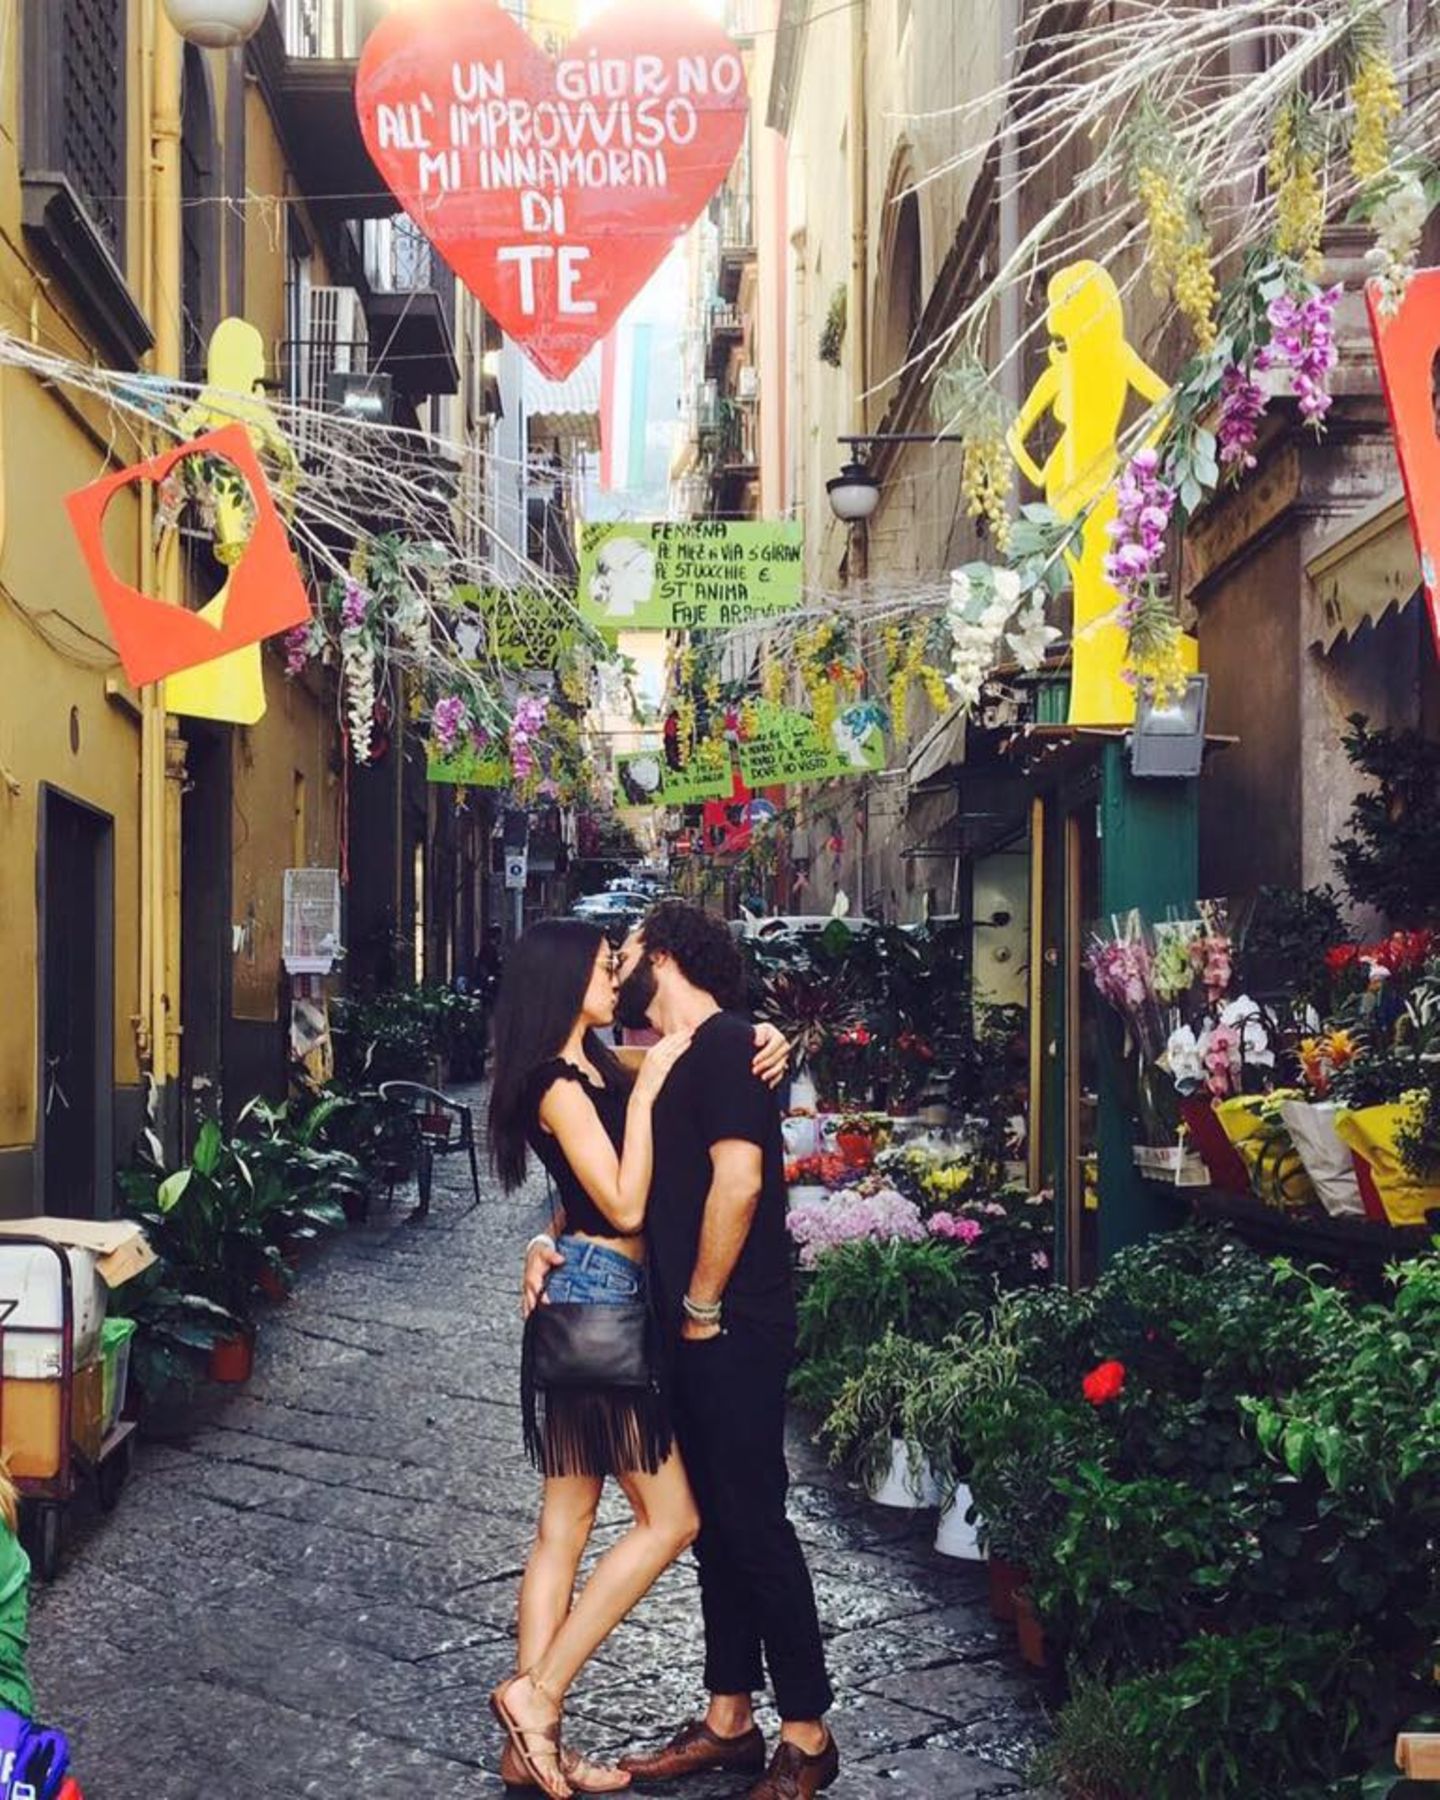 6. Juli 2016   Es ist Weltkusstag: Rebecca Mir und Massimo Sinató zeigen sich vor romantischer Kulisse, verliebt knutschend.